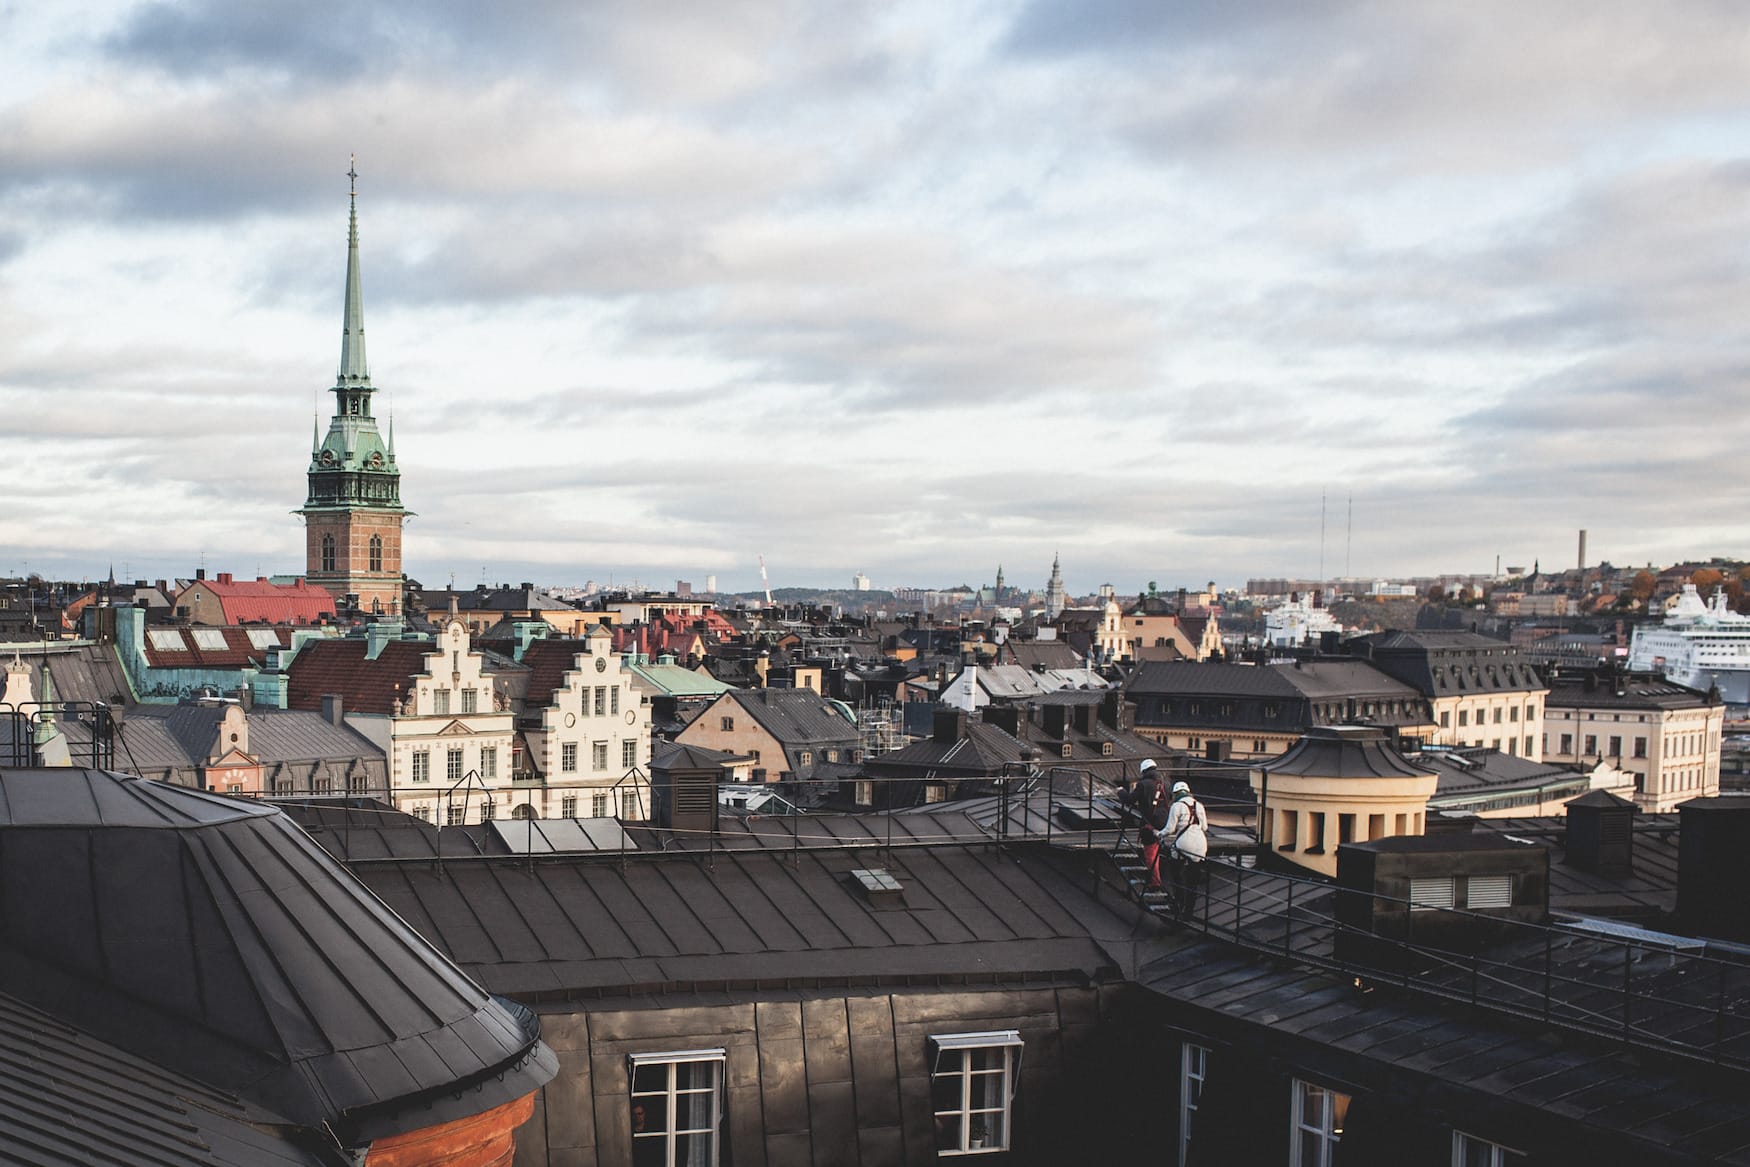 Eine geführte Tour auf dem Dach des alten Parlamentsgebäudes auf Riddarholmen in Stockholm. Eine einzigartige Möglichkeit, die Altstadt zu sehen und mehr darüber zu erfahren.